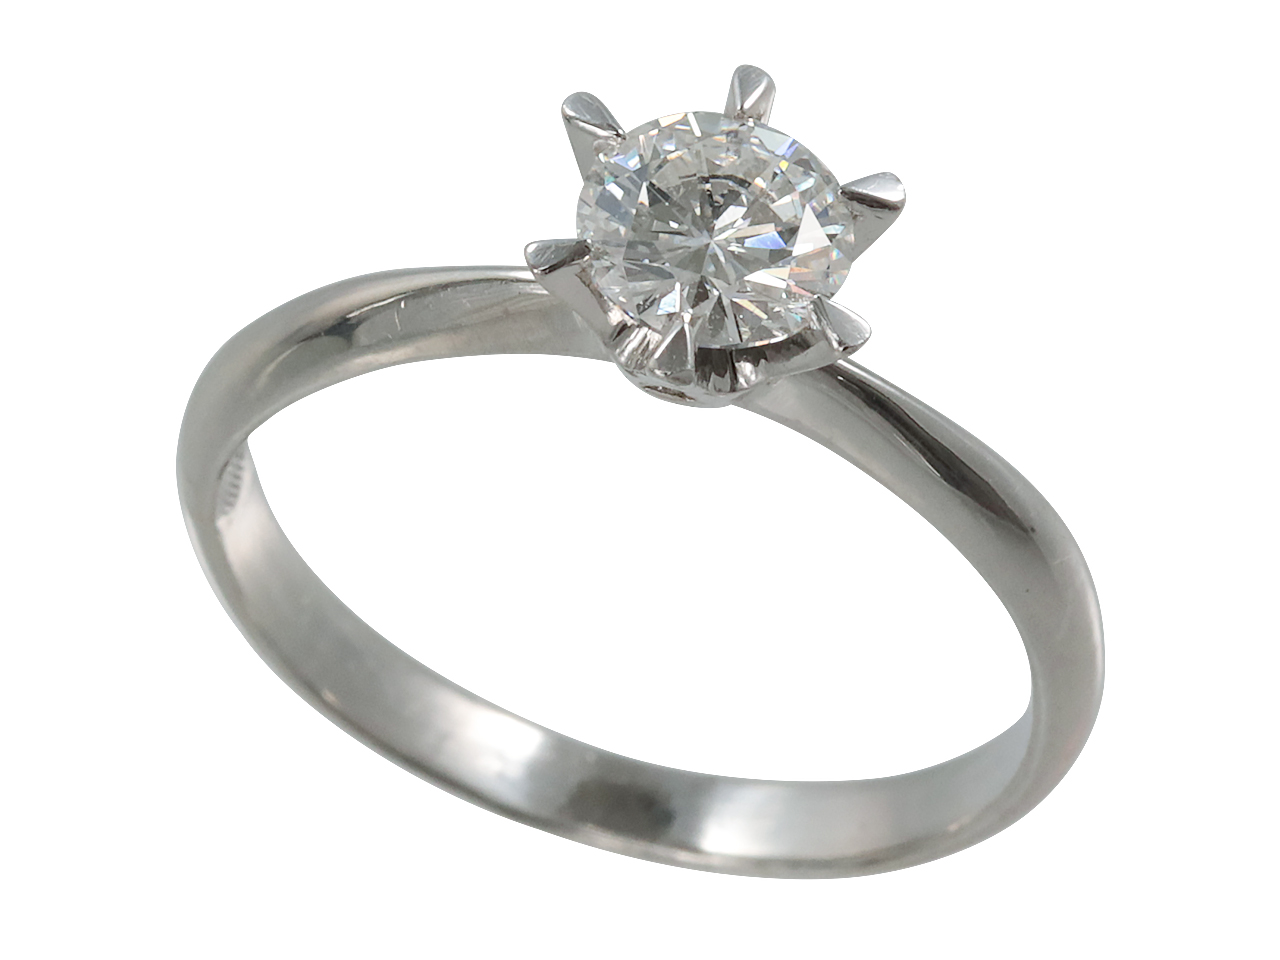 30年の証、婚約指輪のダイヤを娘の結婚式で輝かせるリフォーム